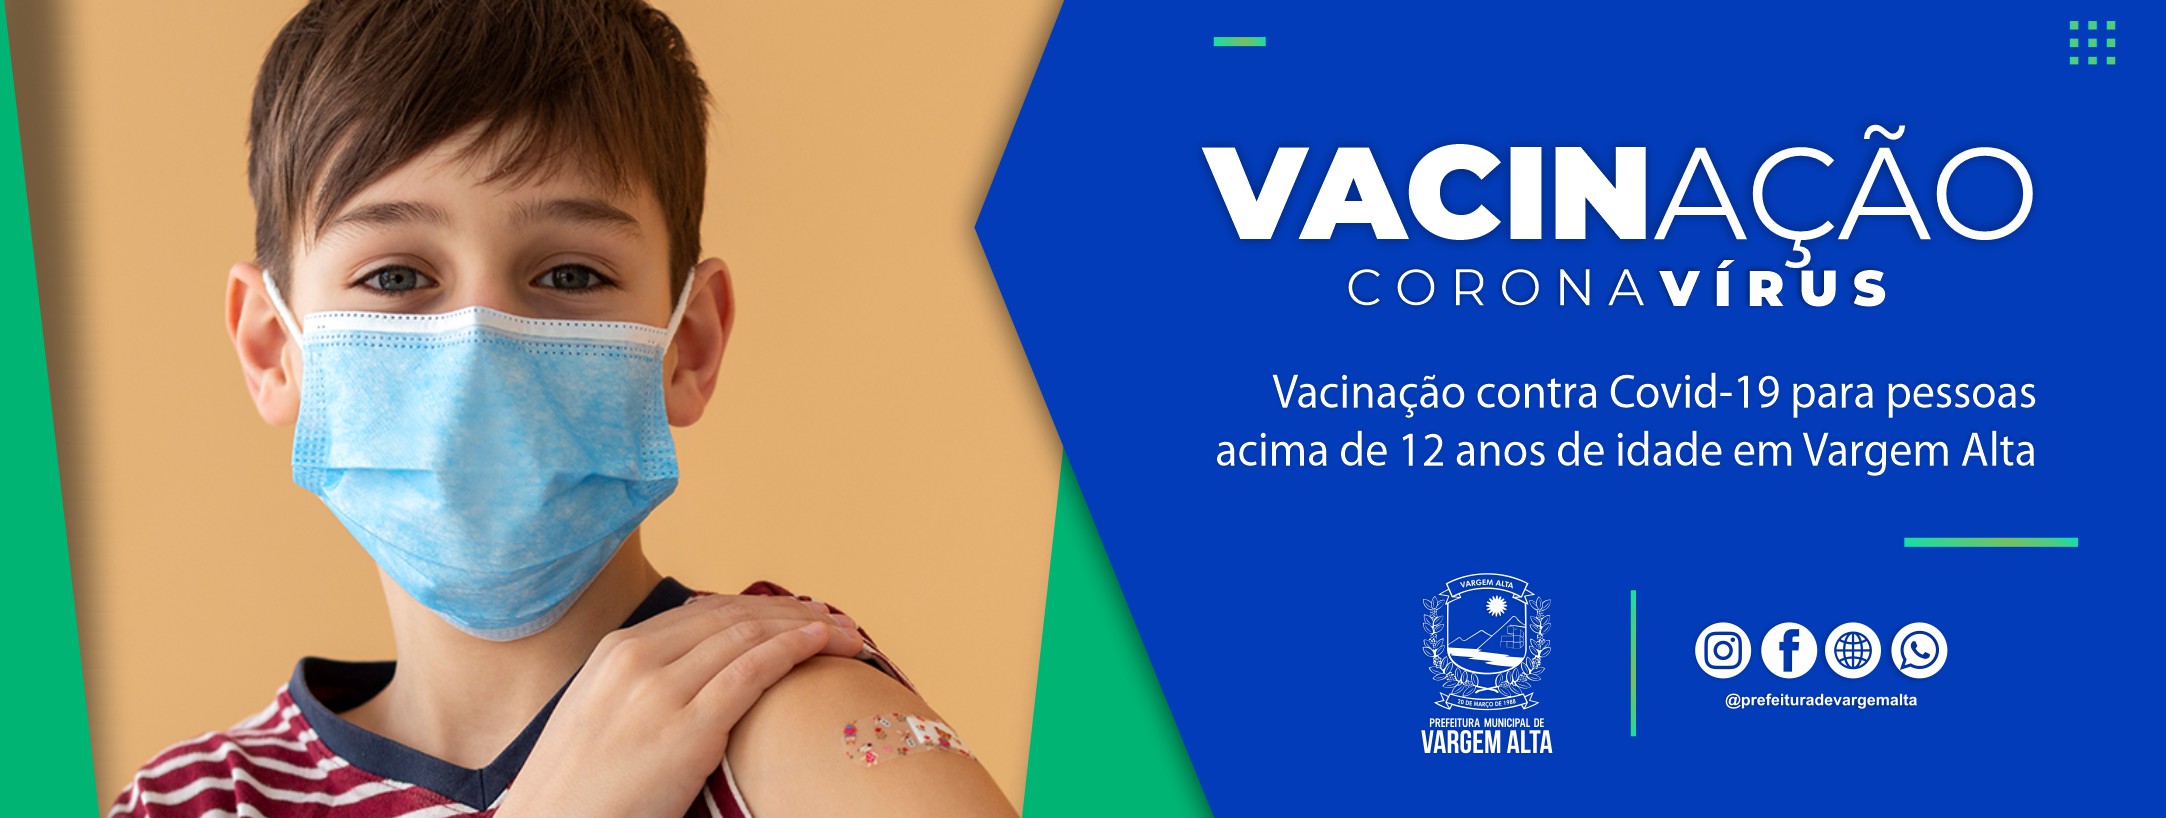 Vacinação Covid-19 para pessoas acima de 12 anos em Vargem Alta 